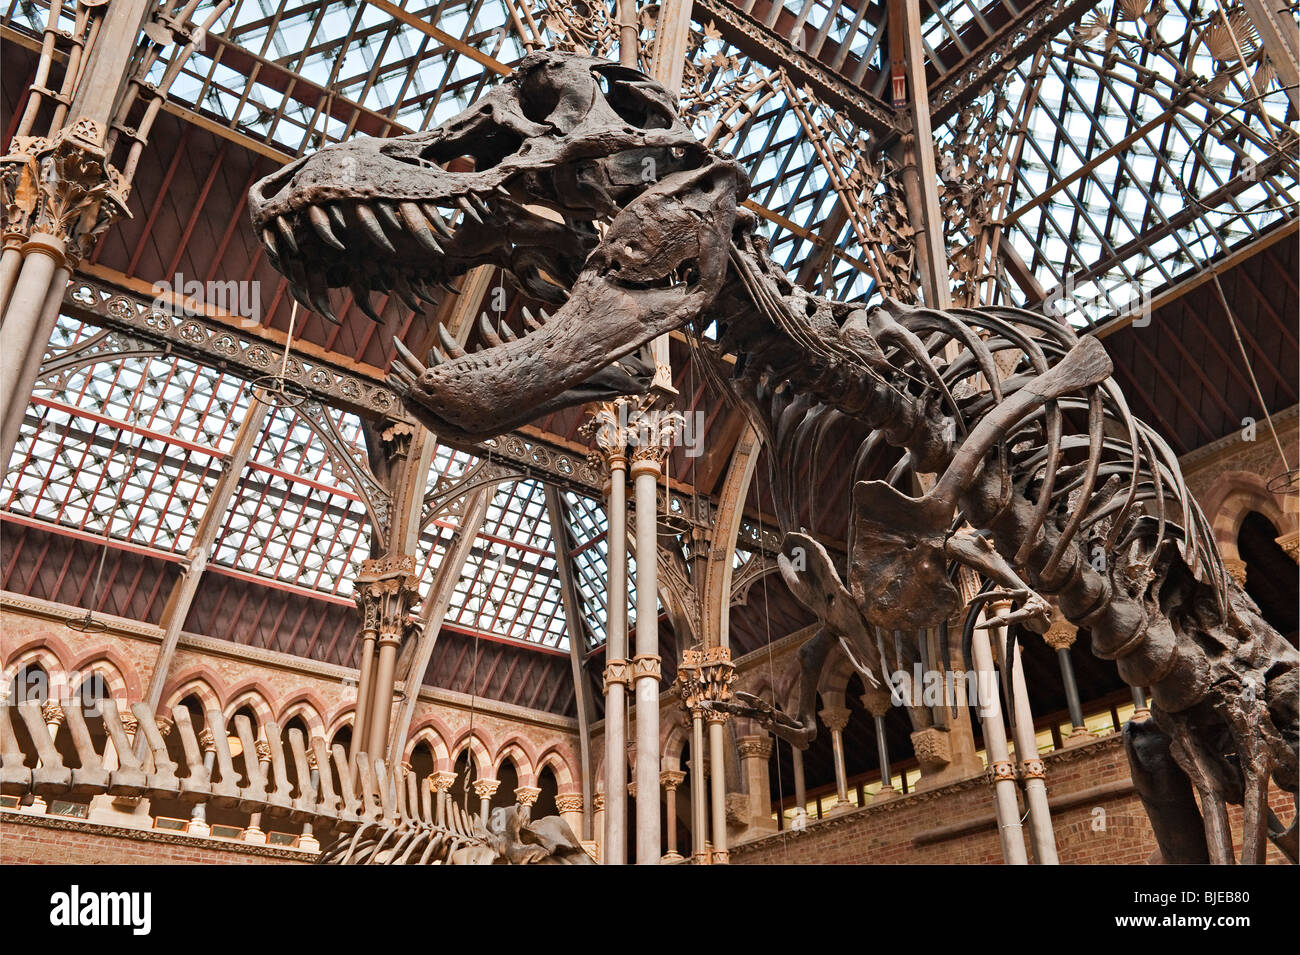 Das Oxford University Museum of Natural History, Großbritannien. Abguss des fossilen Skeletts eines Tyrannosaurus Rex Dinosauriers Stockfoto